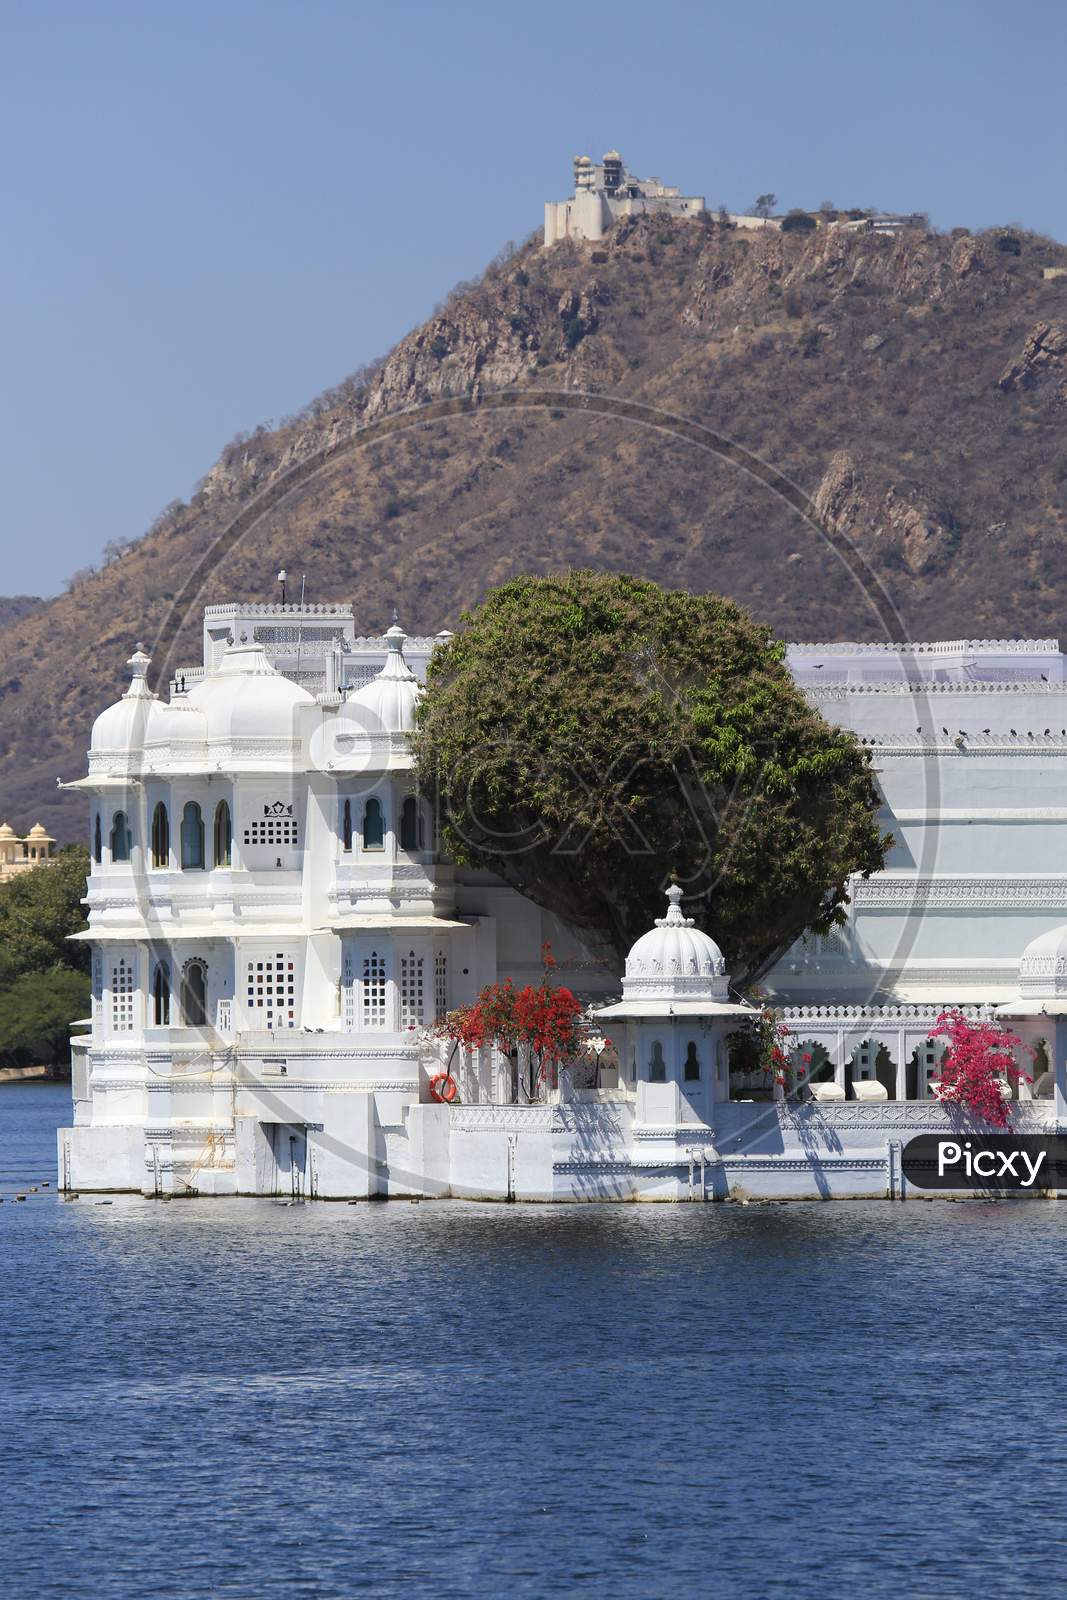 Lake Palace-Monsoon Palace, Udaipur